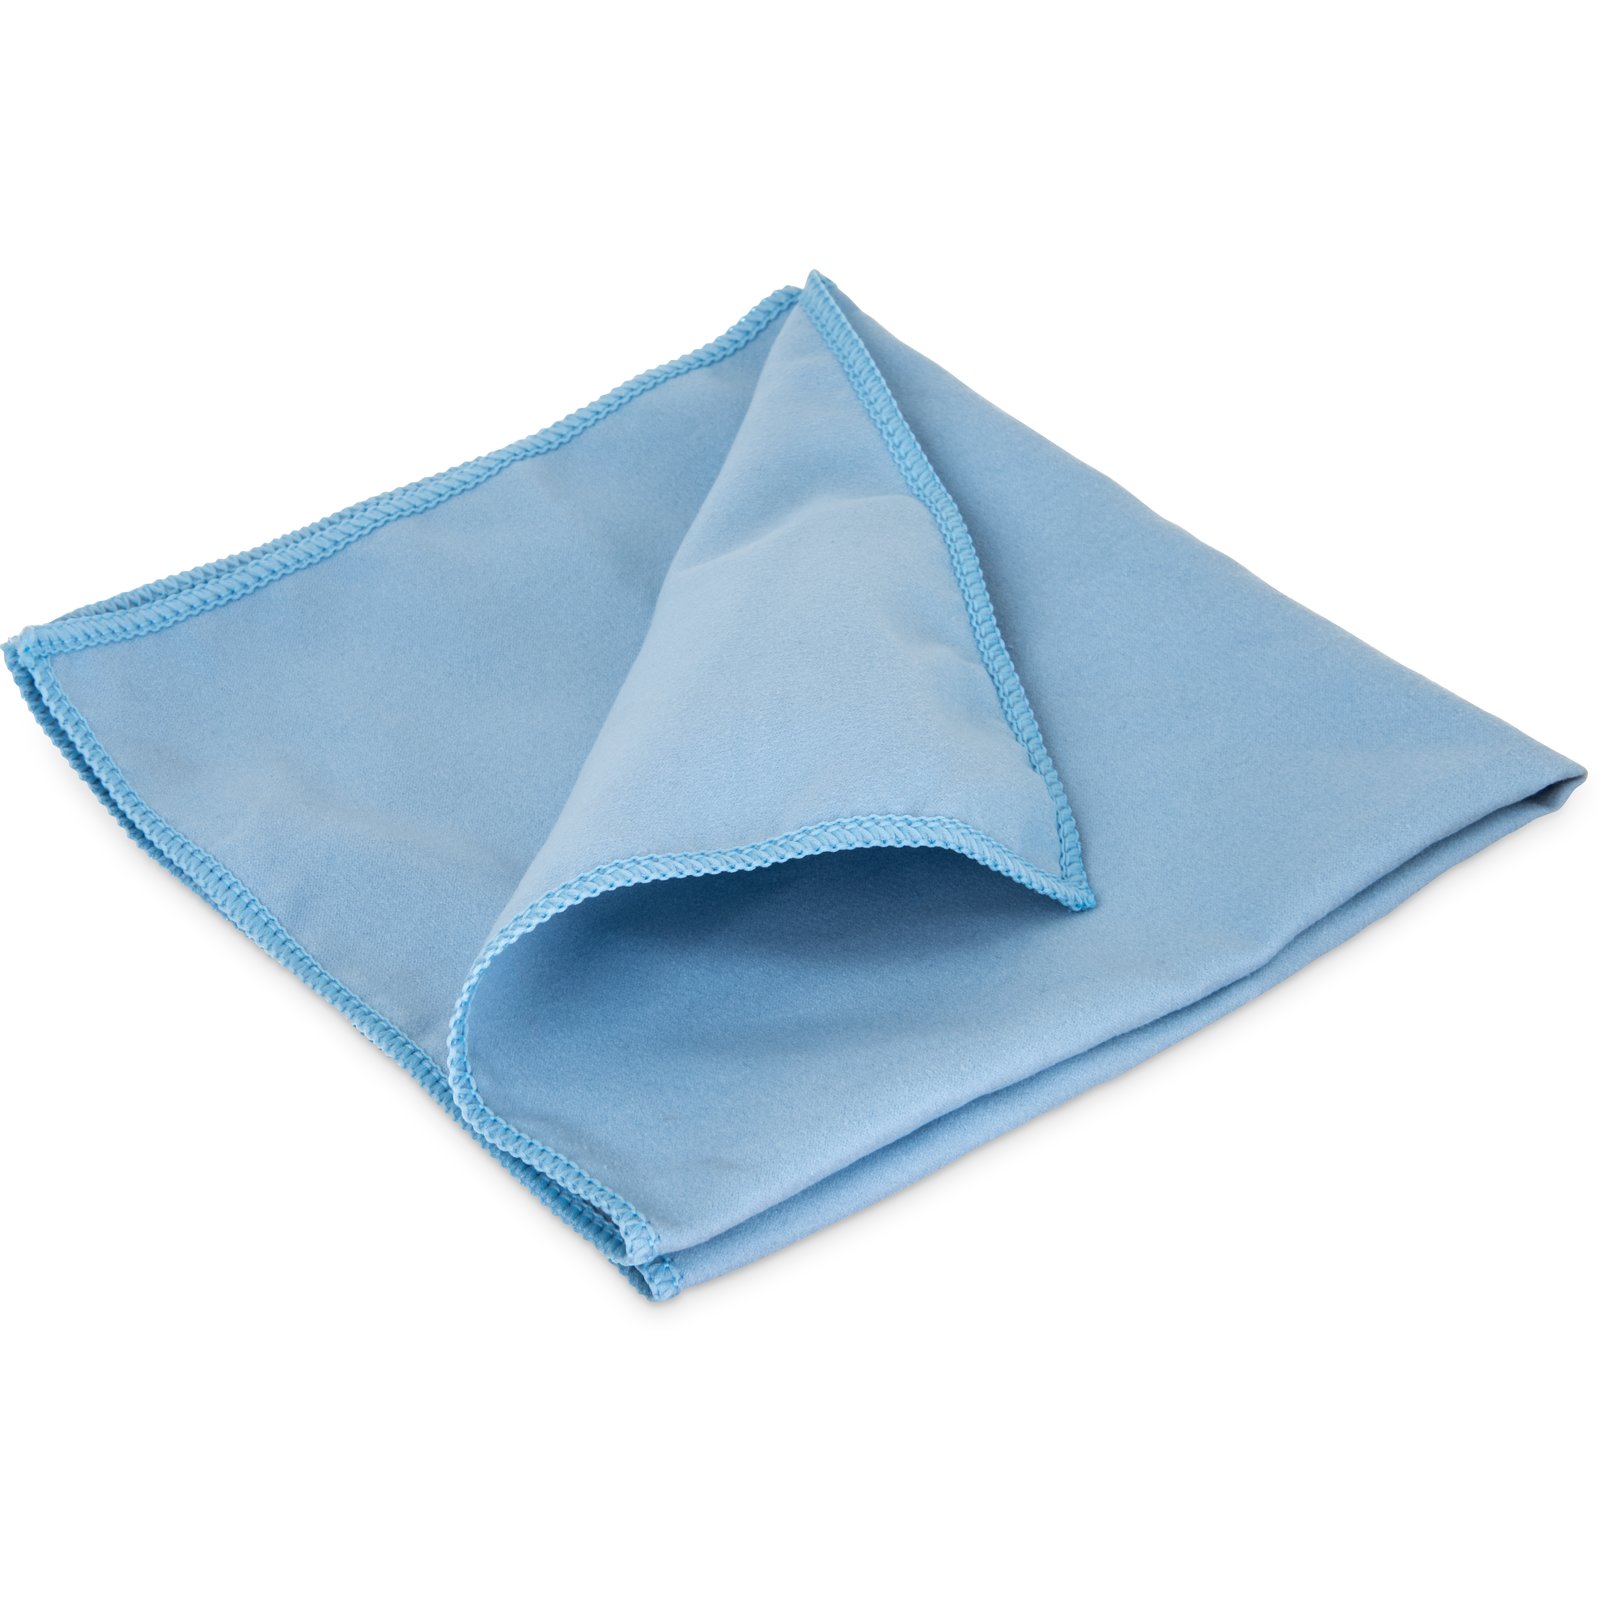 Original Microfibre cloth, 32 x 32 cm, Blue 691013